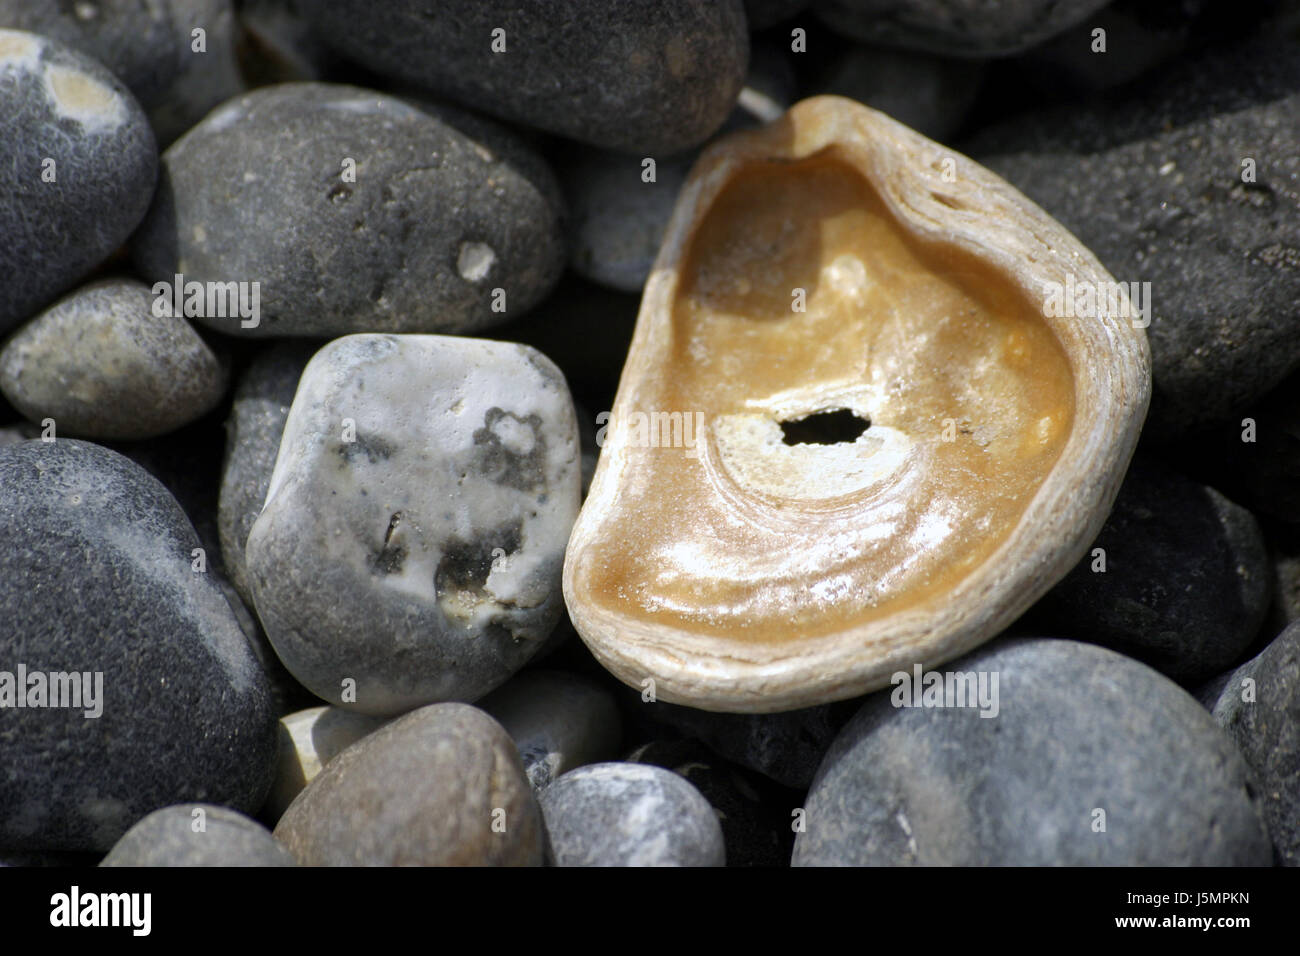 shell on gravel Stock Photo